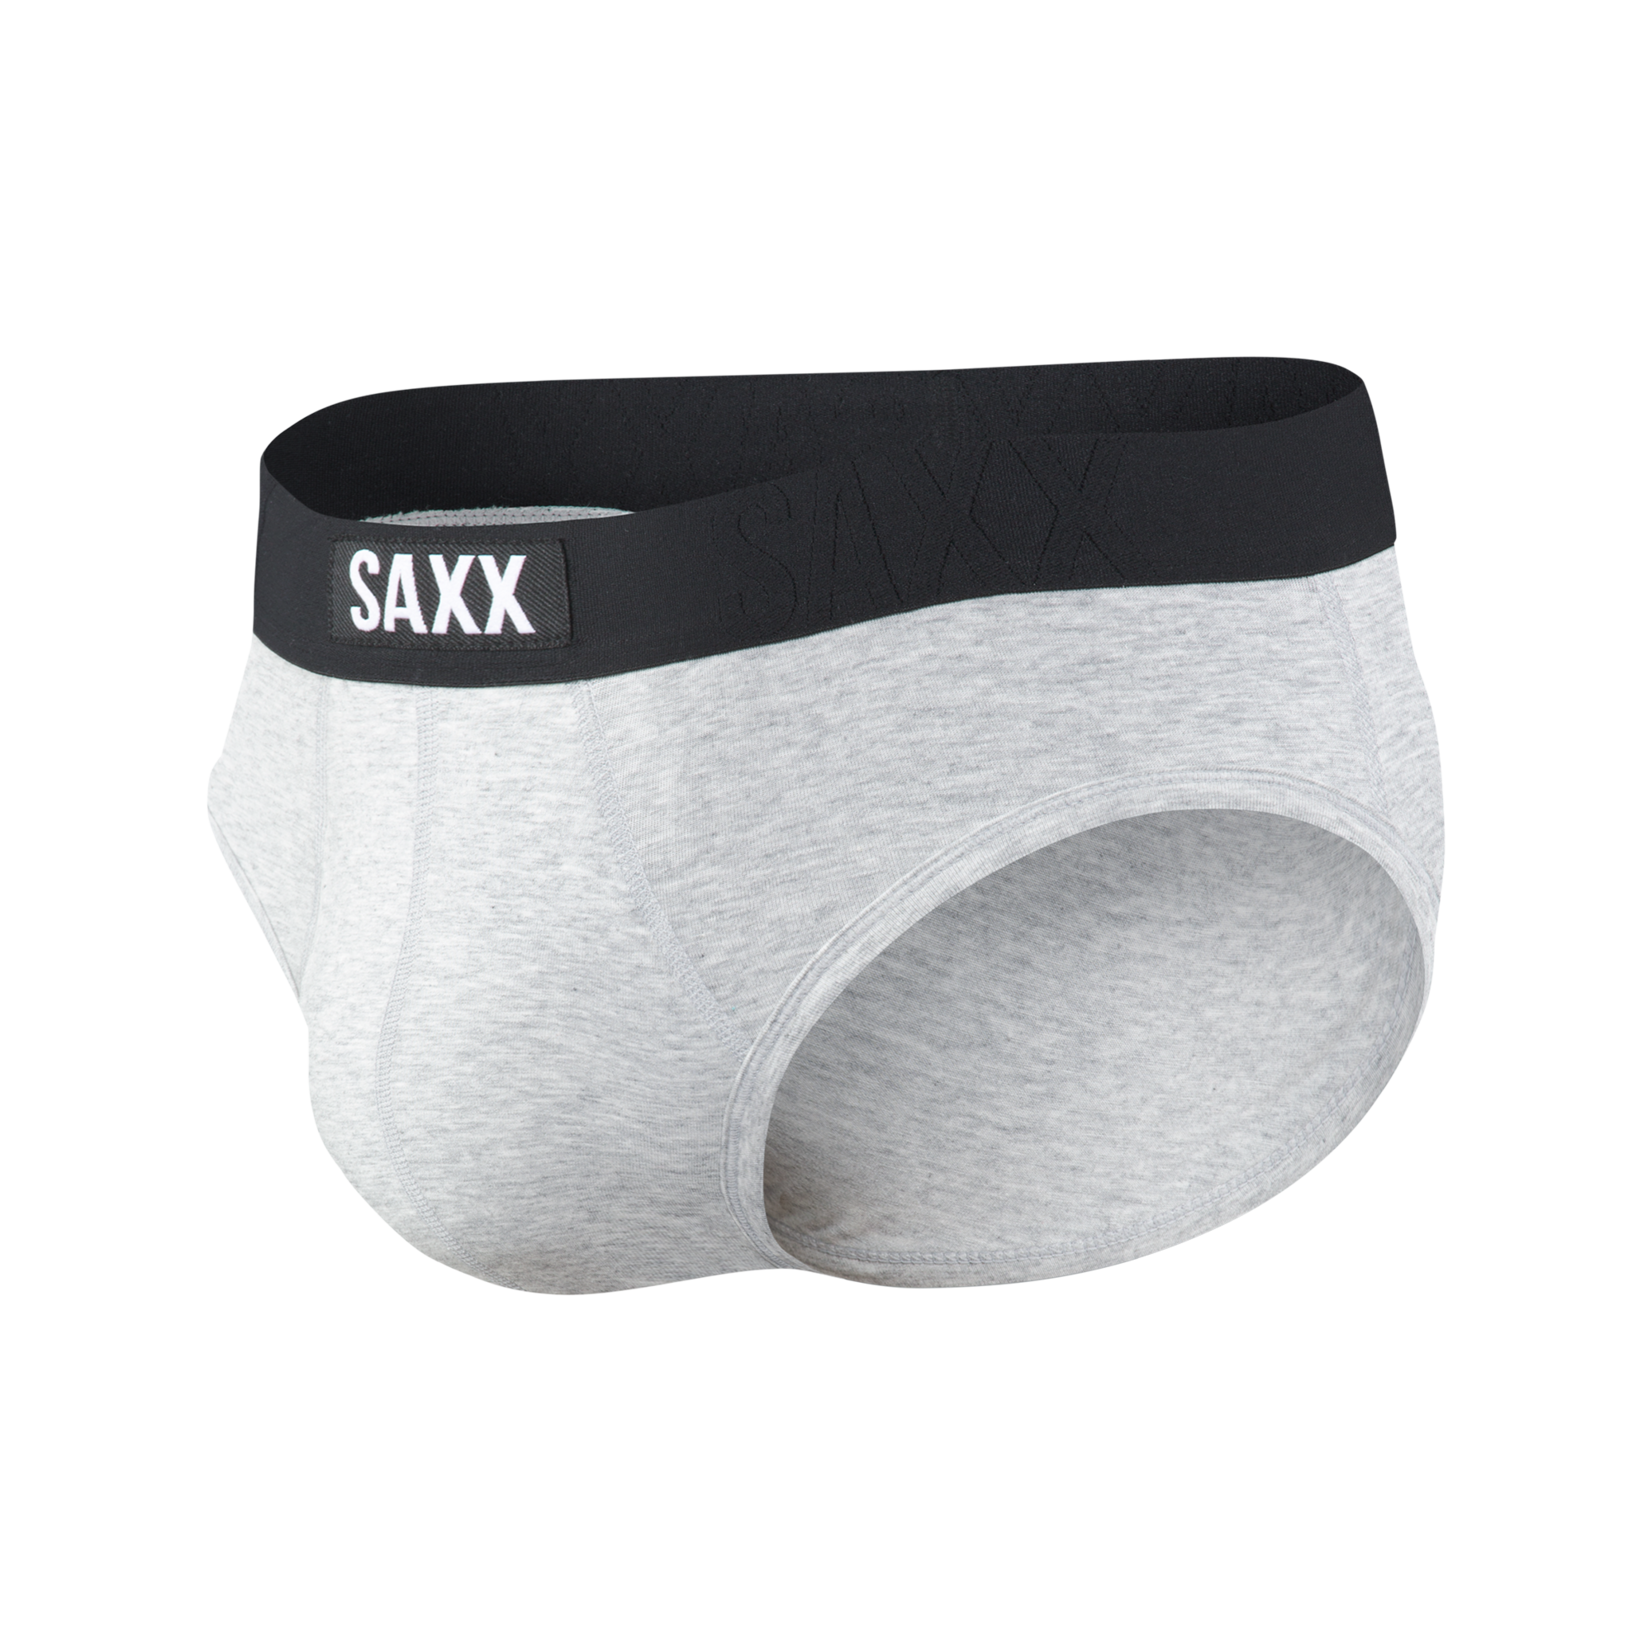 SAXX's Undercover Brief